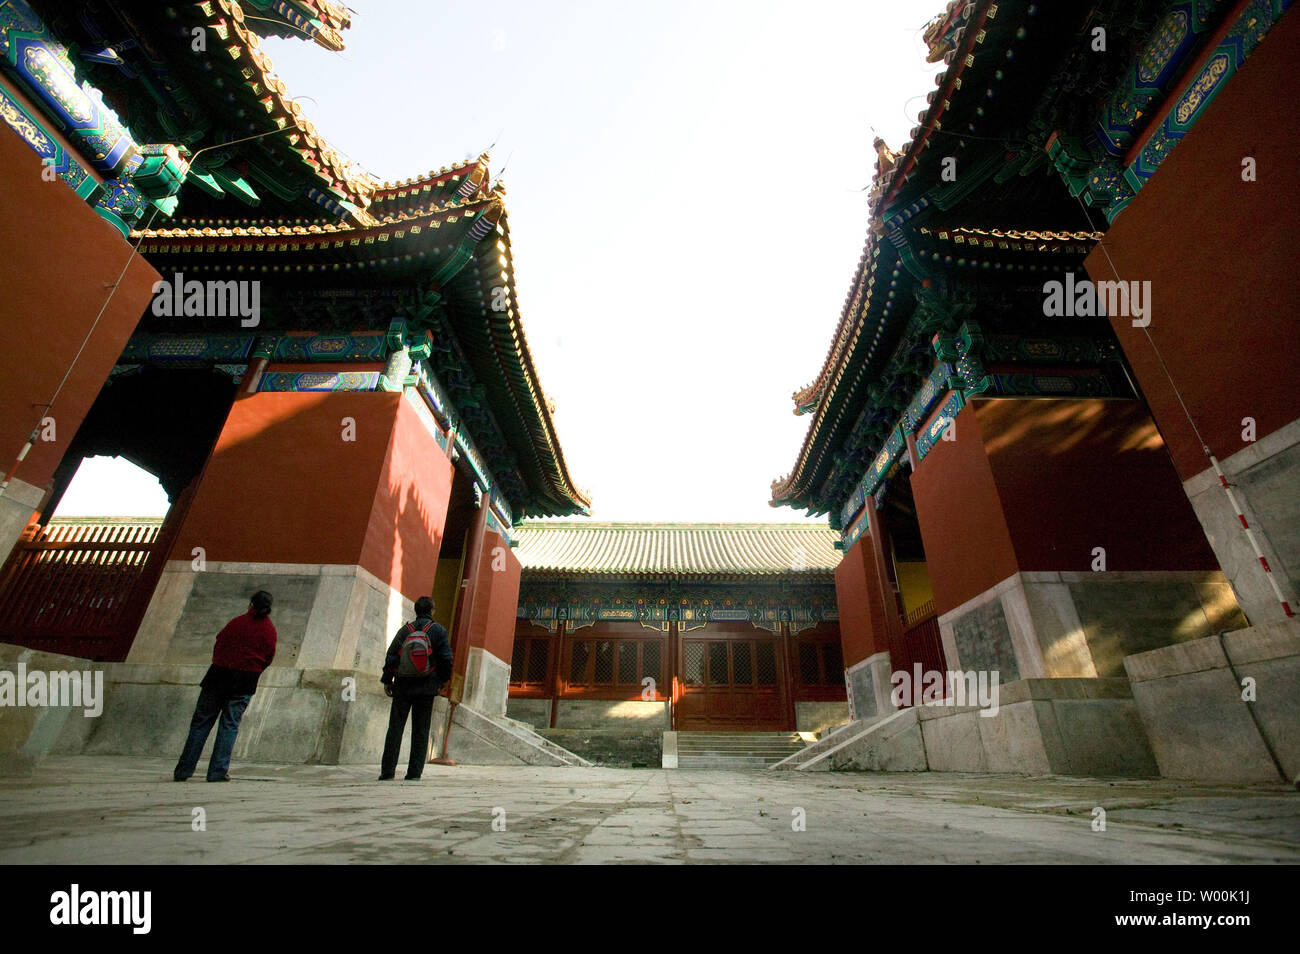 Les touristes chinois visiter le Temple de Confucius dans le centre de Pékin, le 23 novembre 2008. Le temple a été construit en 1302 et est le deuxième plus grand temple construit pour Confucius. Confucius a été l'un des plus grands philosophes dans l'ancienne Chine, initialement influencé par la philosophie de Lao Tseu, qui a conseillé une société civile stable fondée sur l application et le respect. Les enseignements de Confucius a joué un rôle clé dans l'époque impériale et ont encore un rôle à jouer dans la culture chinoise d'aujourd'hui. (UPI Photo/Stephen Shaver) Banque D'Images